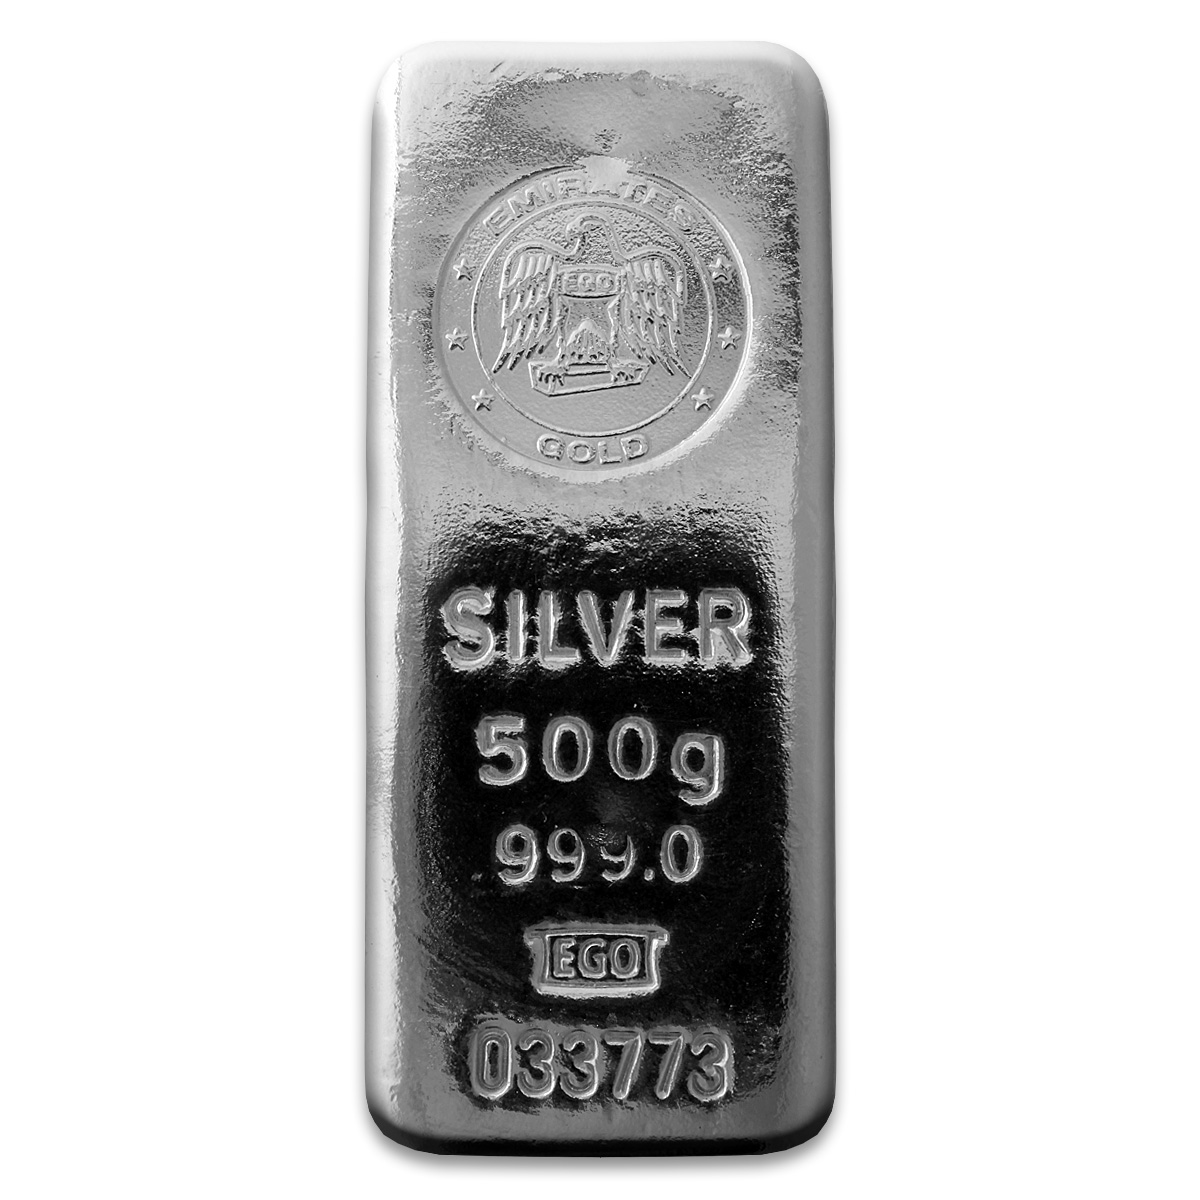 500g Silver Bar | Emirates